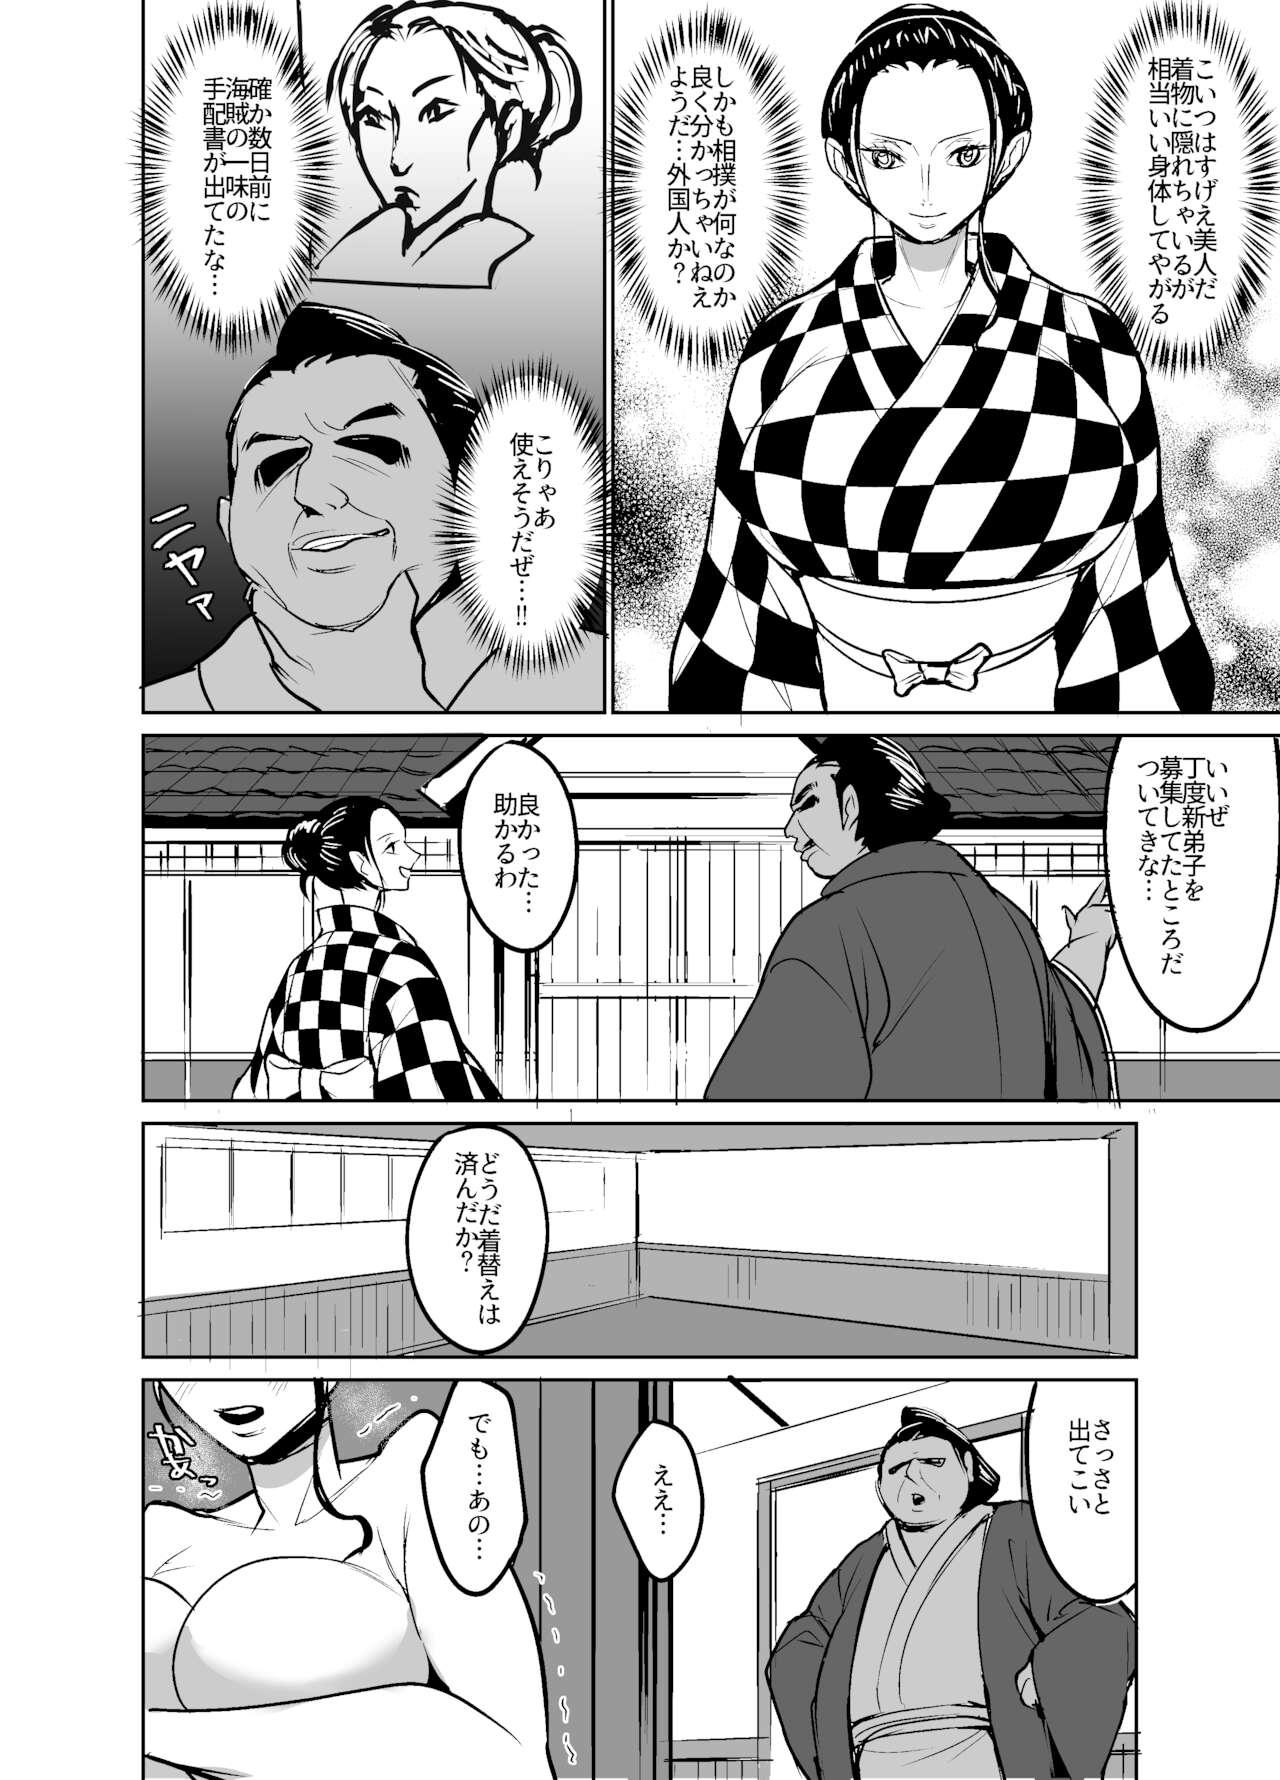 [Hamiltan] Wa no kuni ni sumou-tori to shite sen'nyū shite shimatta kōkogaku-sha/ Archaeologist who has infiltrated Wano country as a sumo wrestler 3